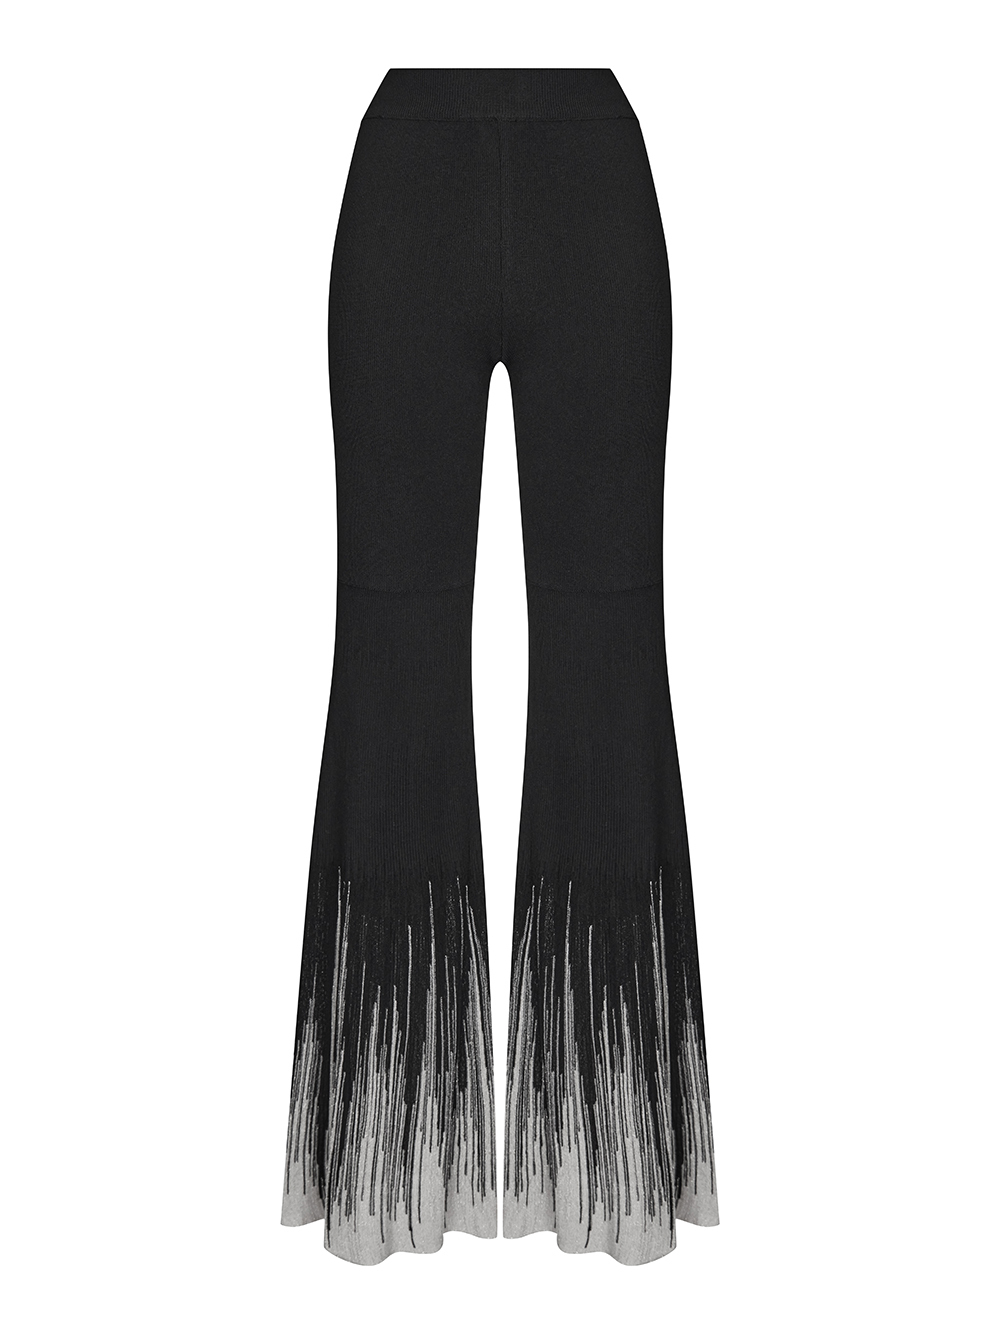 Женские брюки черного цвета с серебром из шелка и вискозы